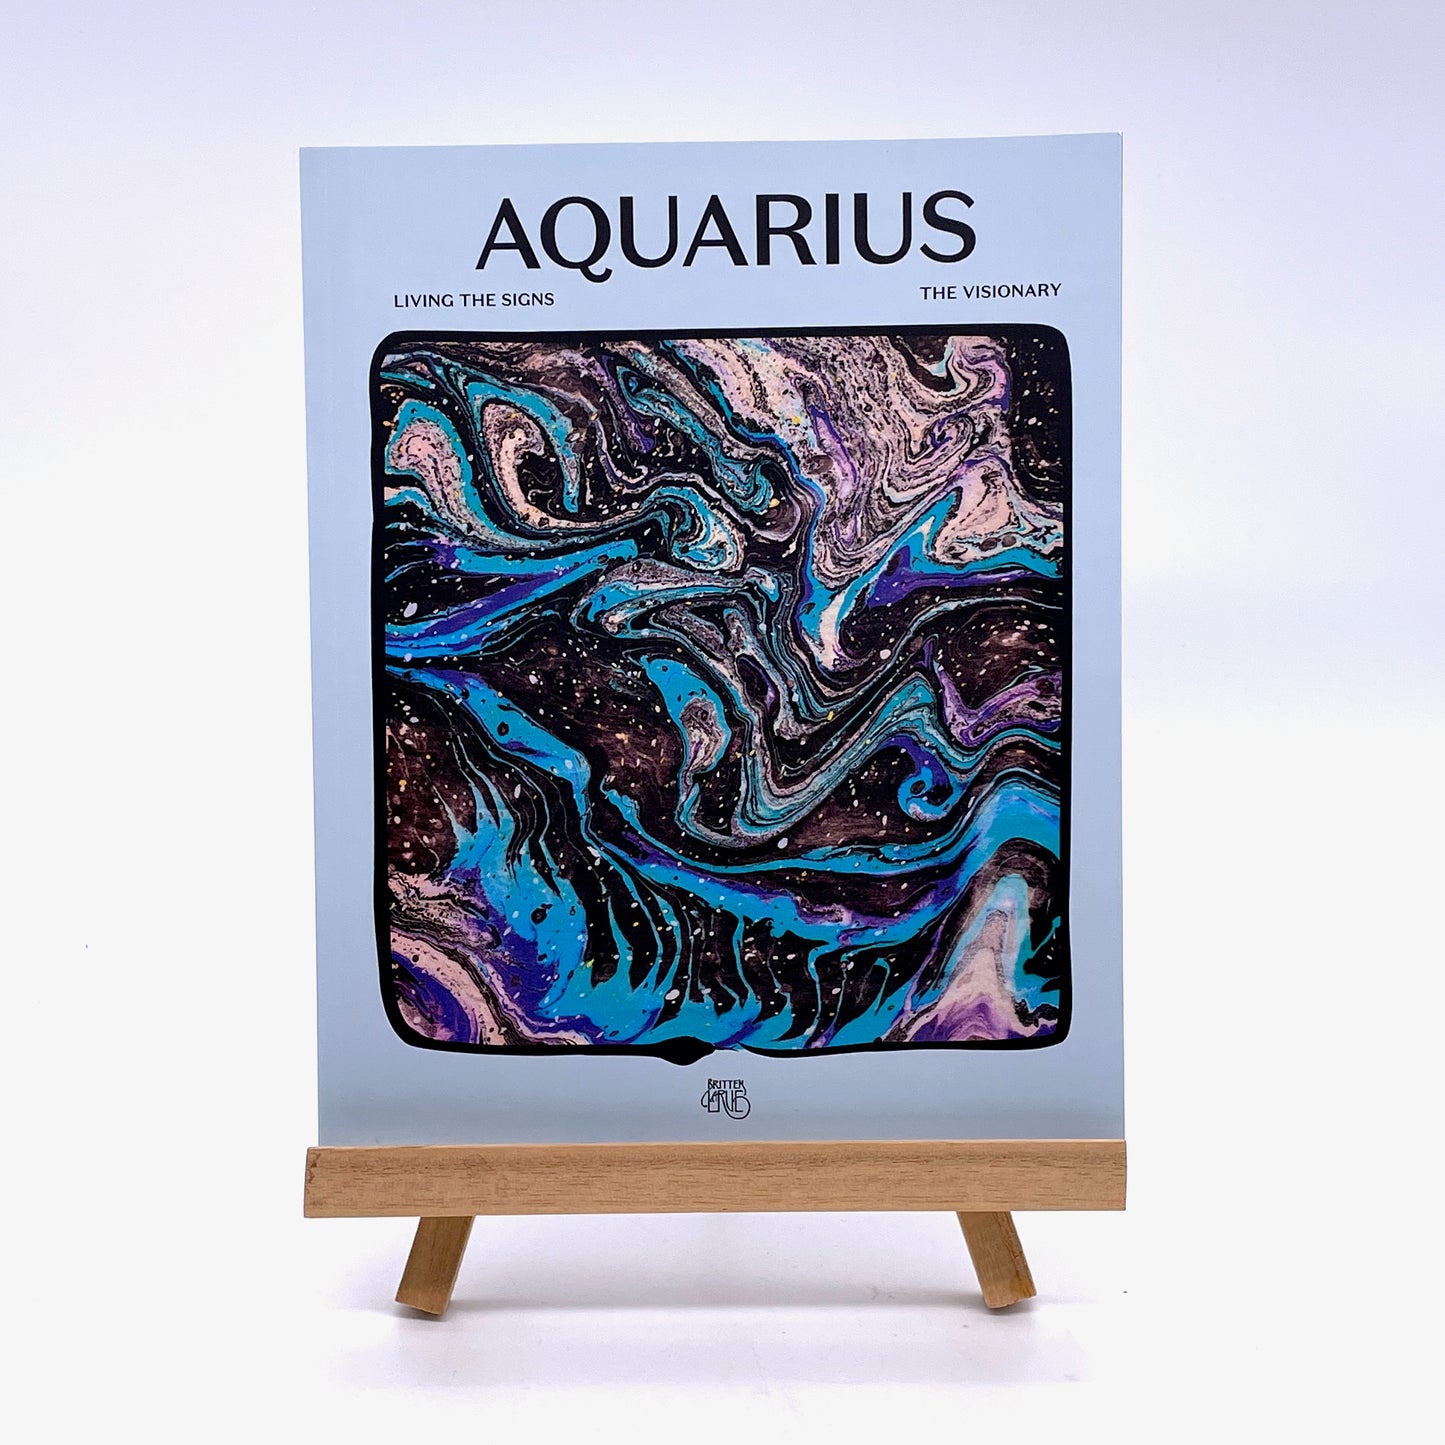 Living the Signs: Aquarius